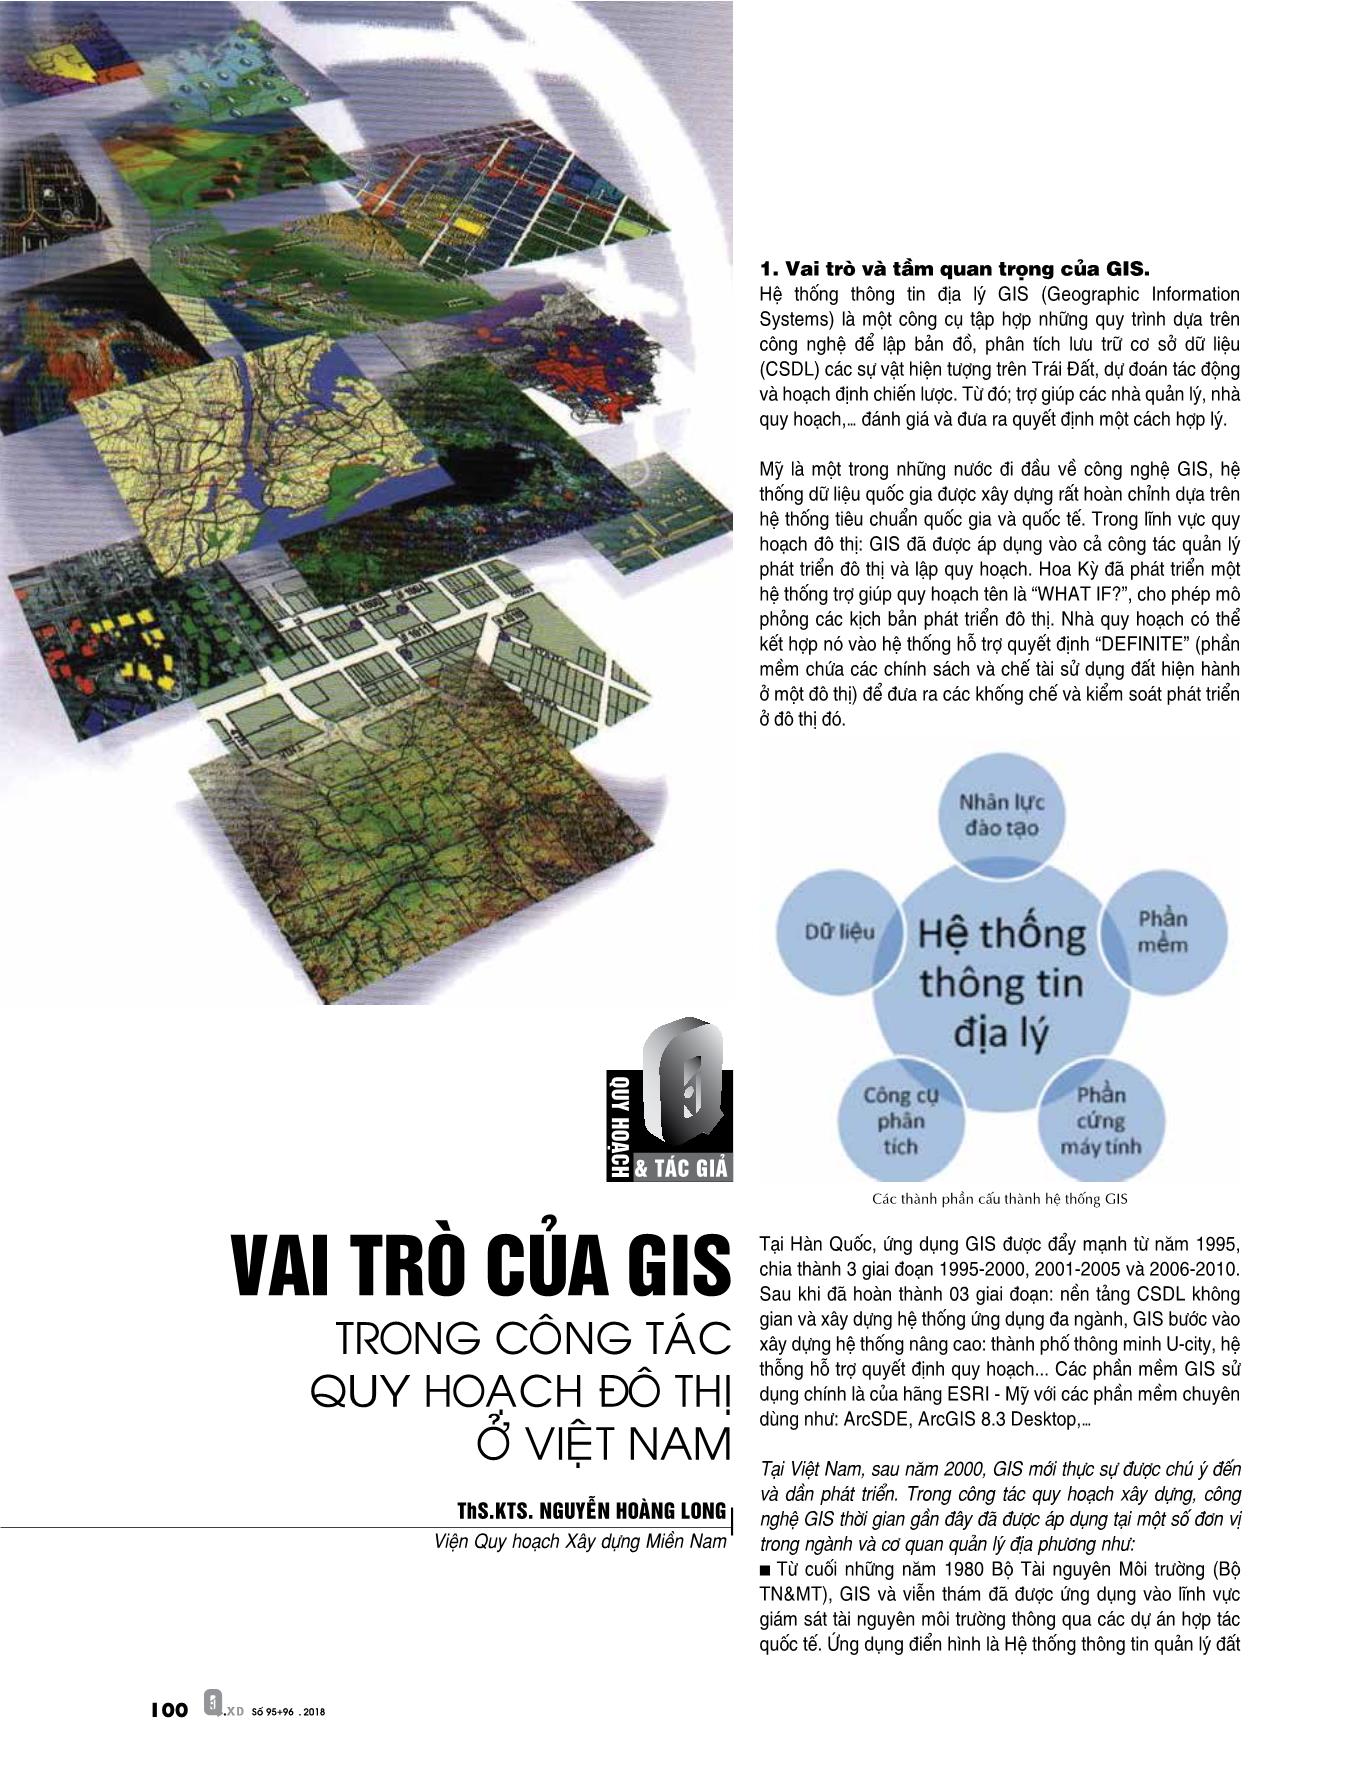 Vai trò của GIS trong công tác quy hoạch đô thị ở Việt Nam trang 1